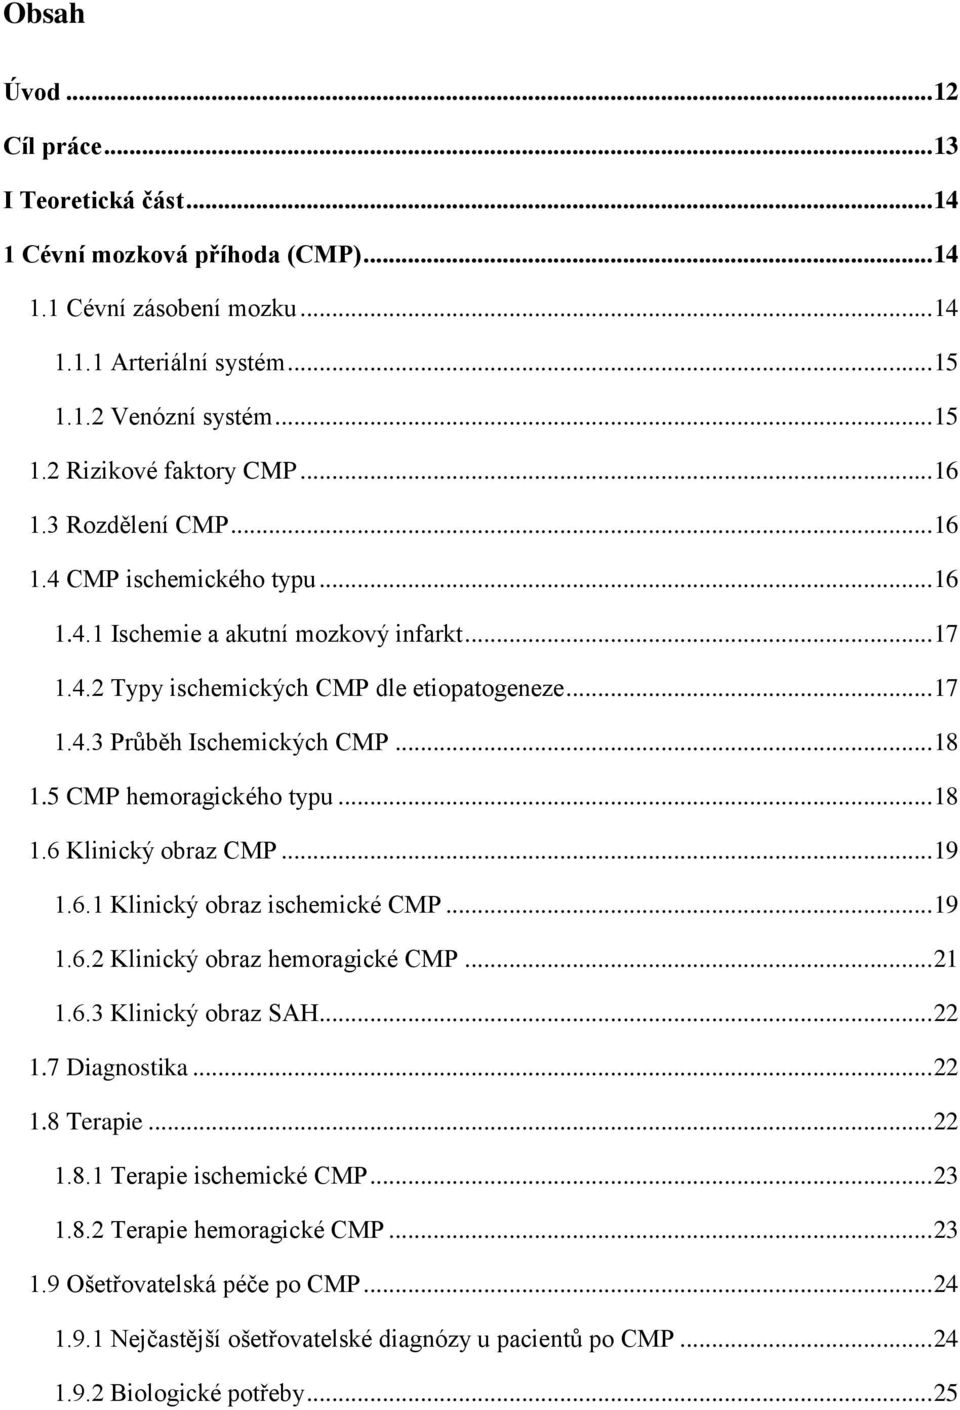 5 CMP hemoragického typu... 18 1.6 Klinický obraz CMP... 19 1.6.1 Klinický obraz ischemické CMP... 19 1.6.2 Klinický obraz hemoragické CMP... 21 1.6.3 Klinický obraz SAH... 22 1.7 Diagnostika... 22 1.8 Terapie.